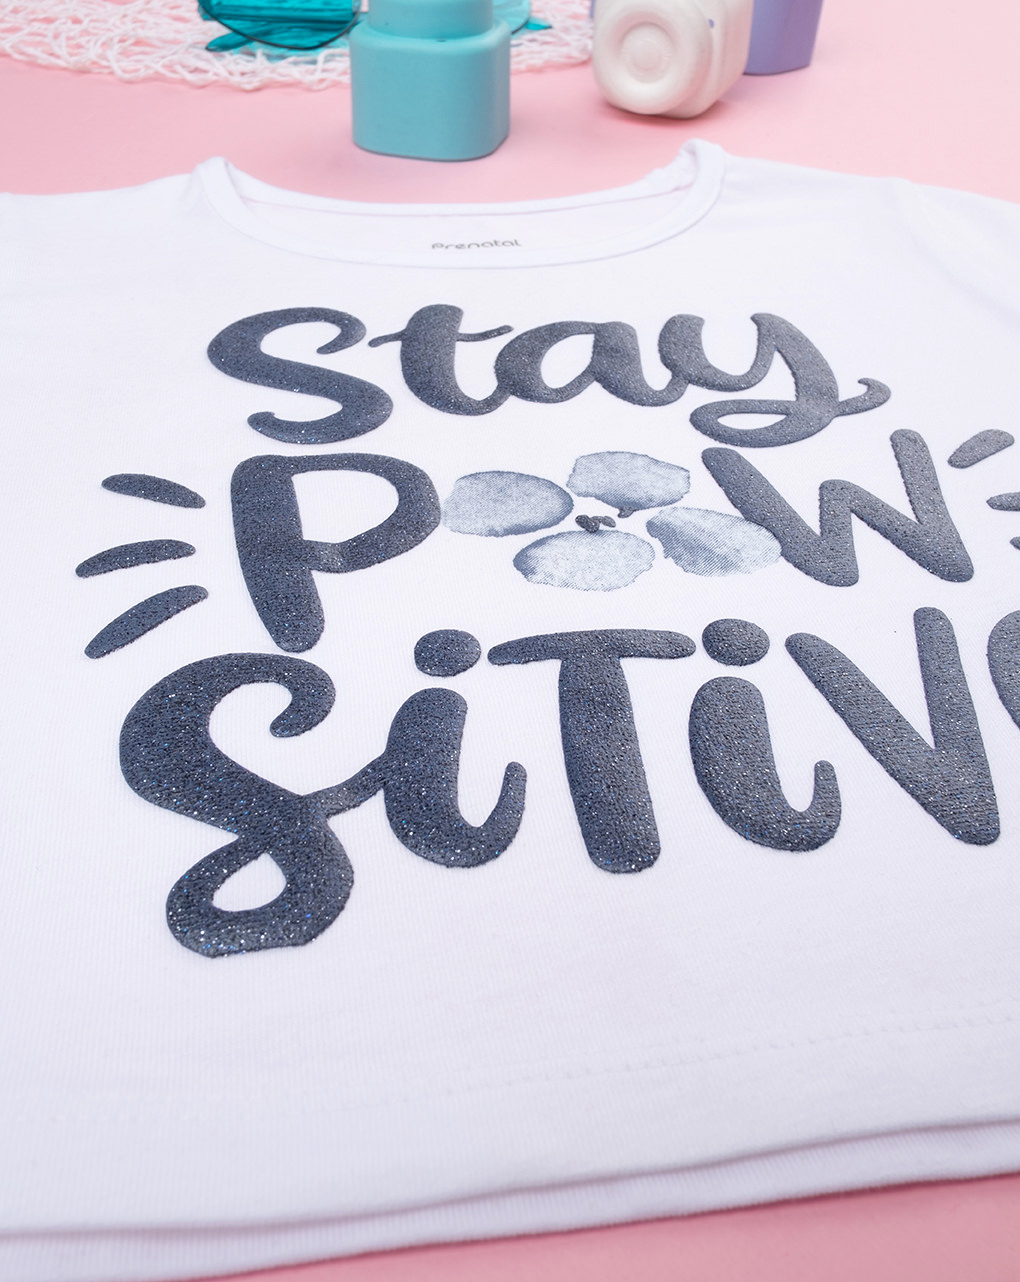 παιδική μπλούζα λευκή stay positive για κορίτσι - Prénatal